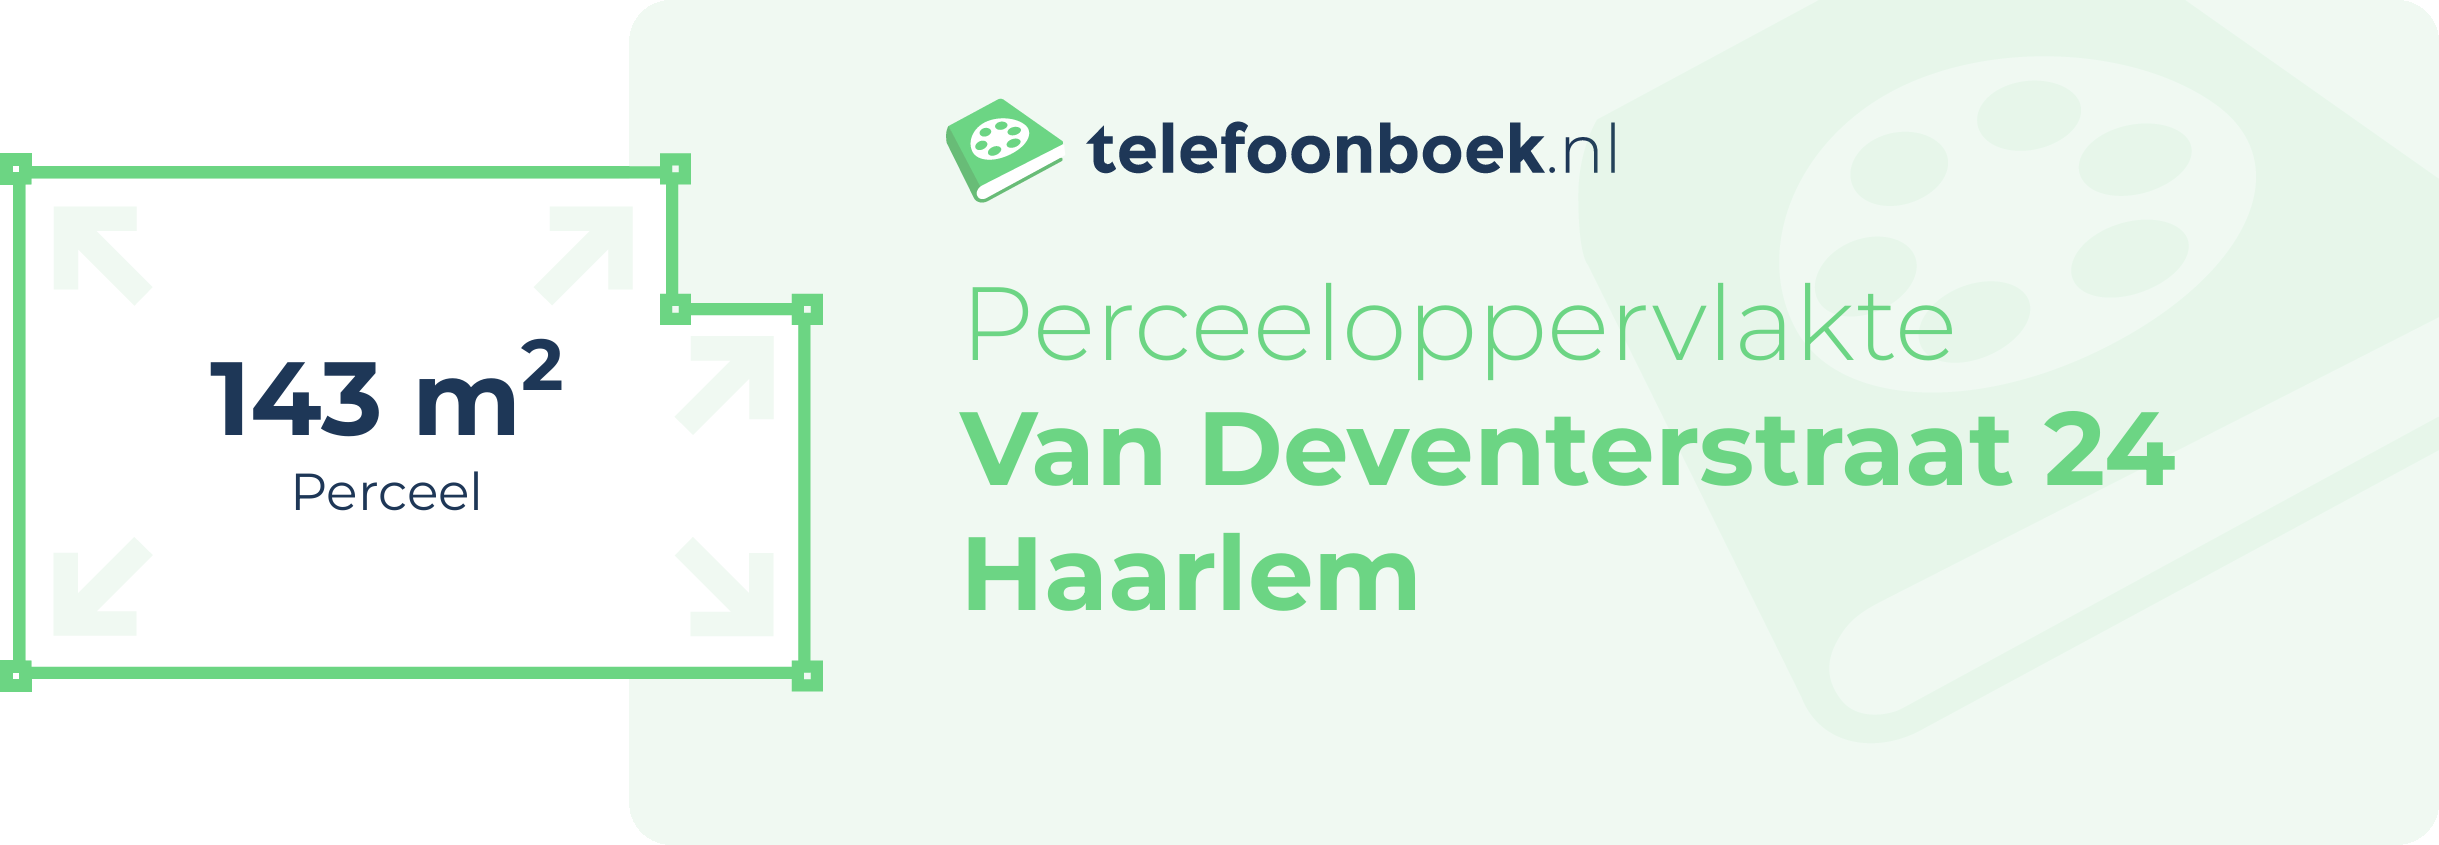 Perceeloppervlakte Van Deventerstraat 24 Haarlem